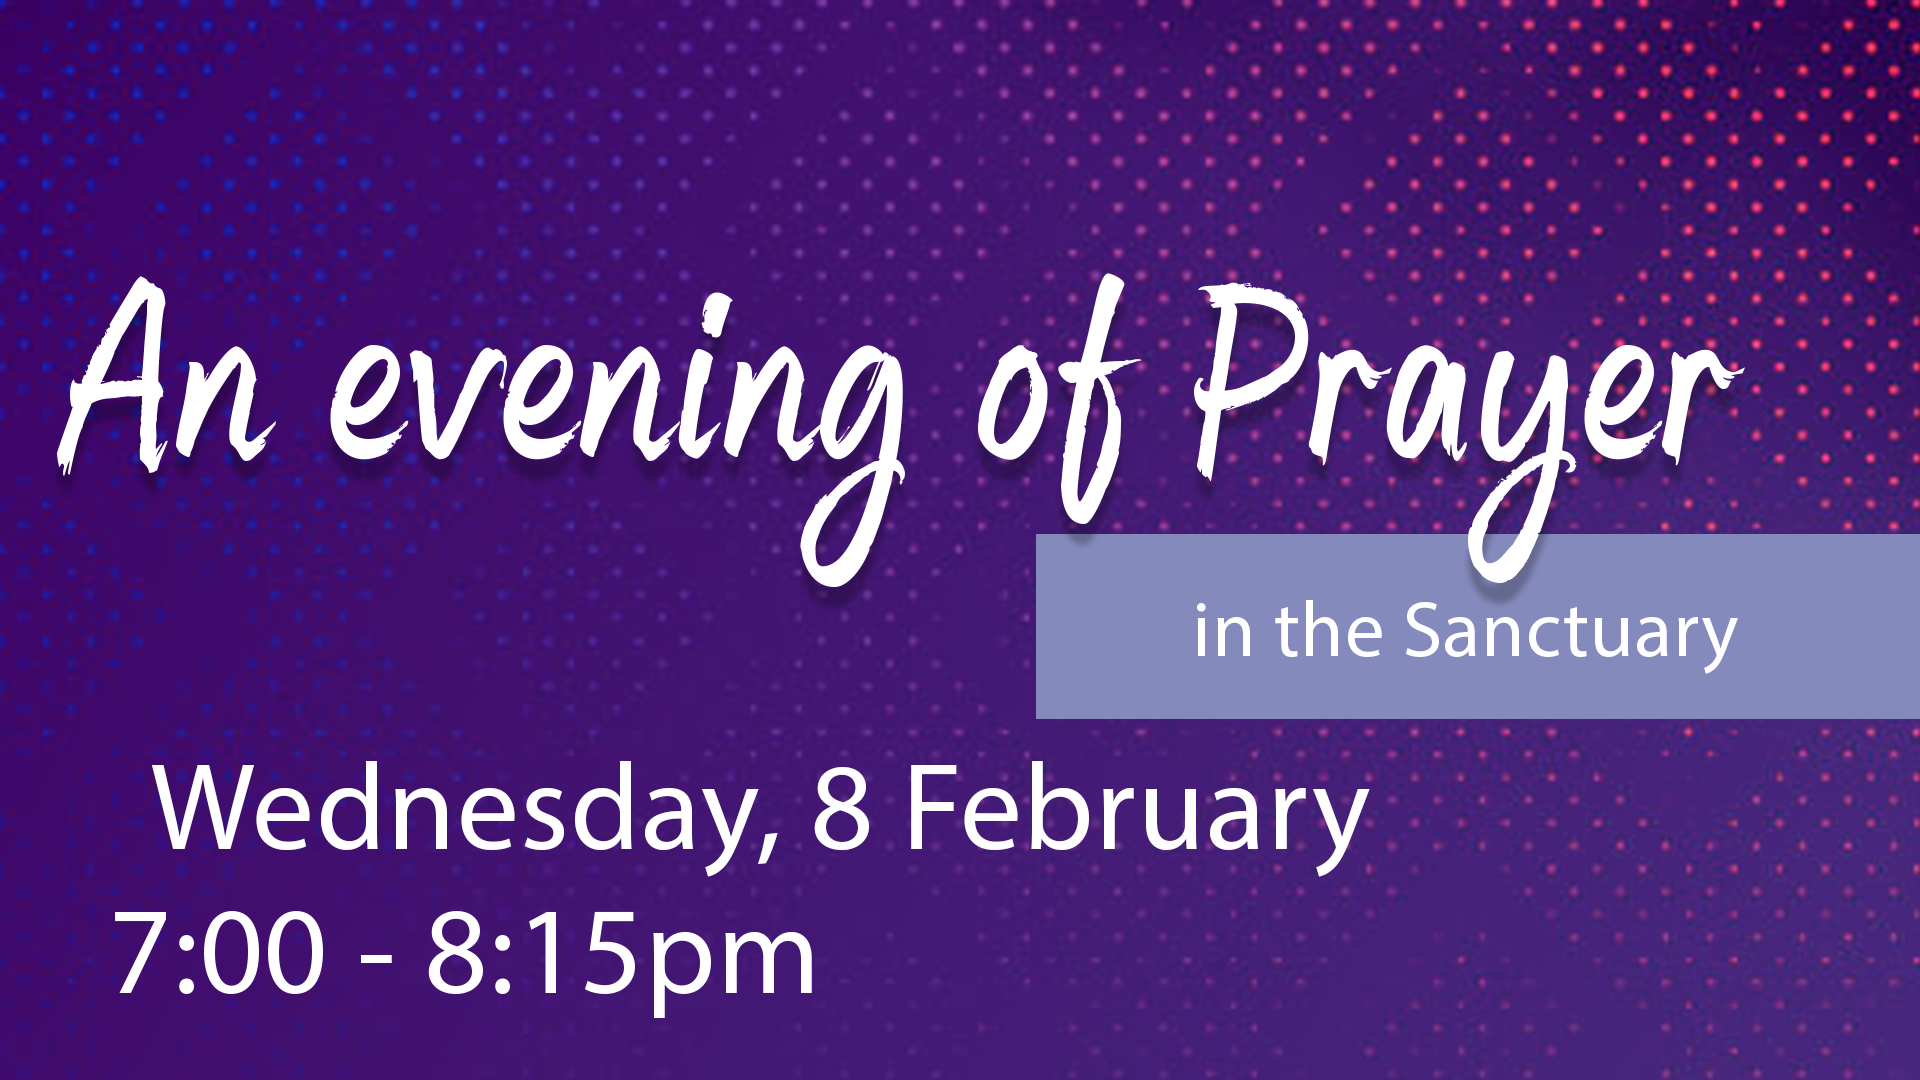 An Evening of Prayer at Union Church Hong Kong